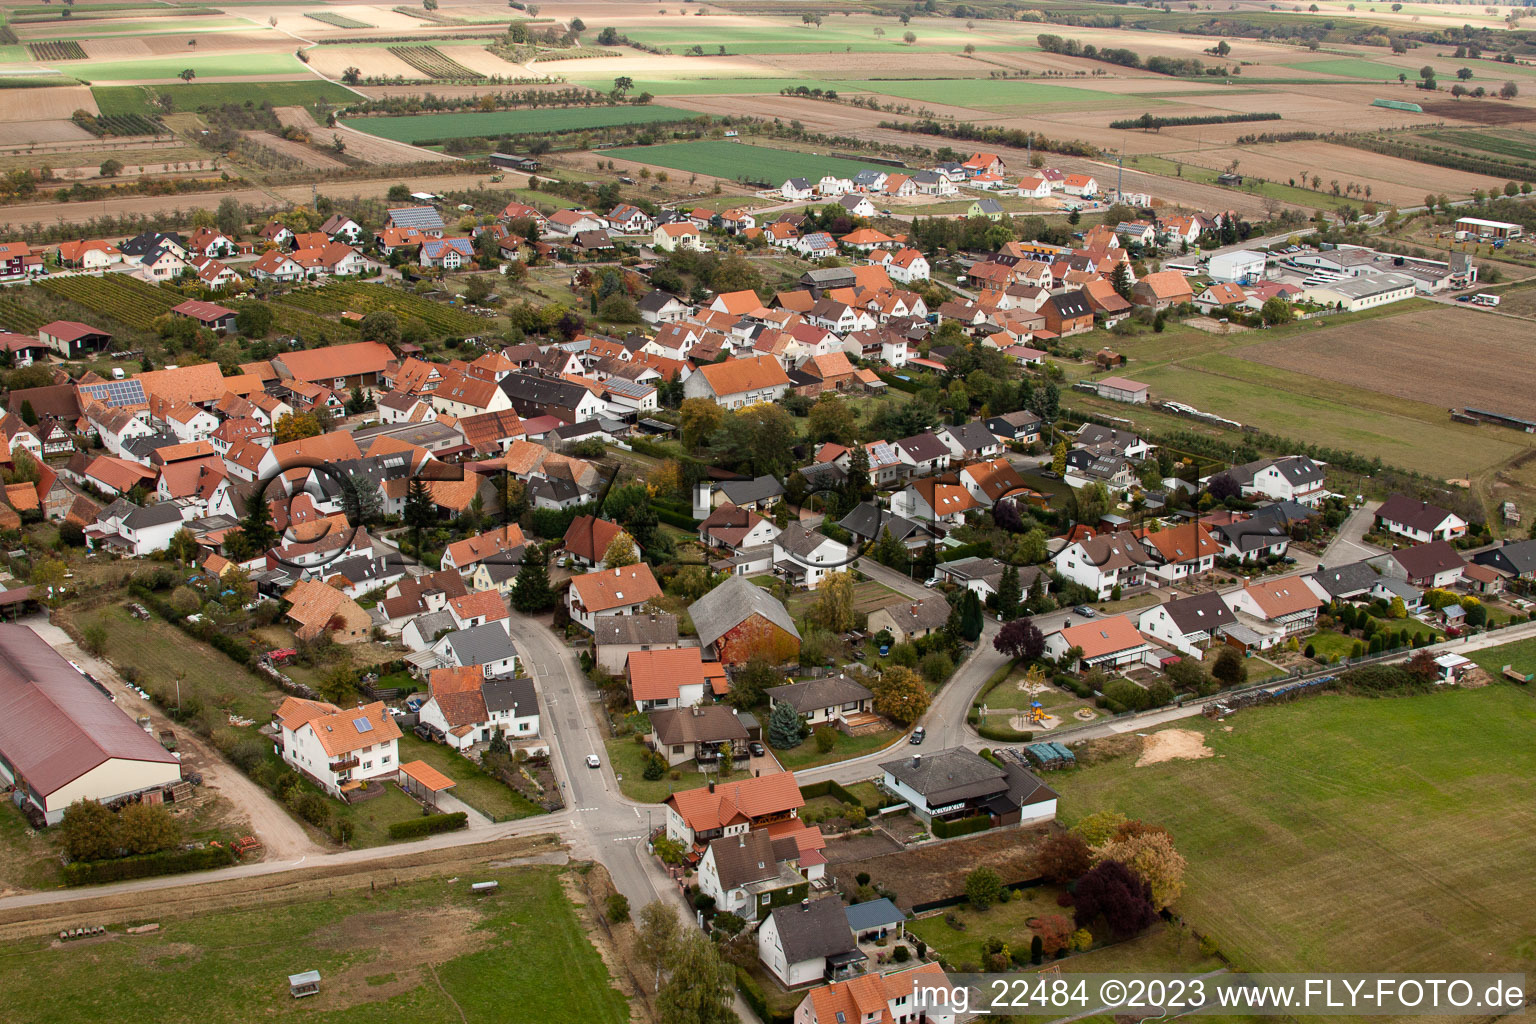 Schweighofen im Bundesland Rheinland-Pfalz, Deutschland von einer Drohne aus